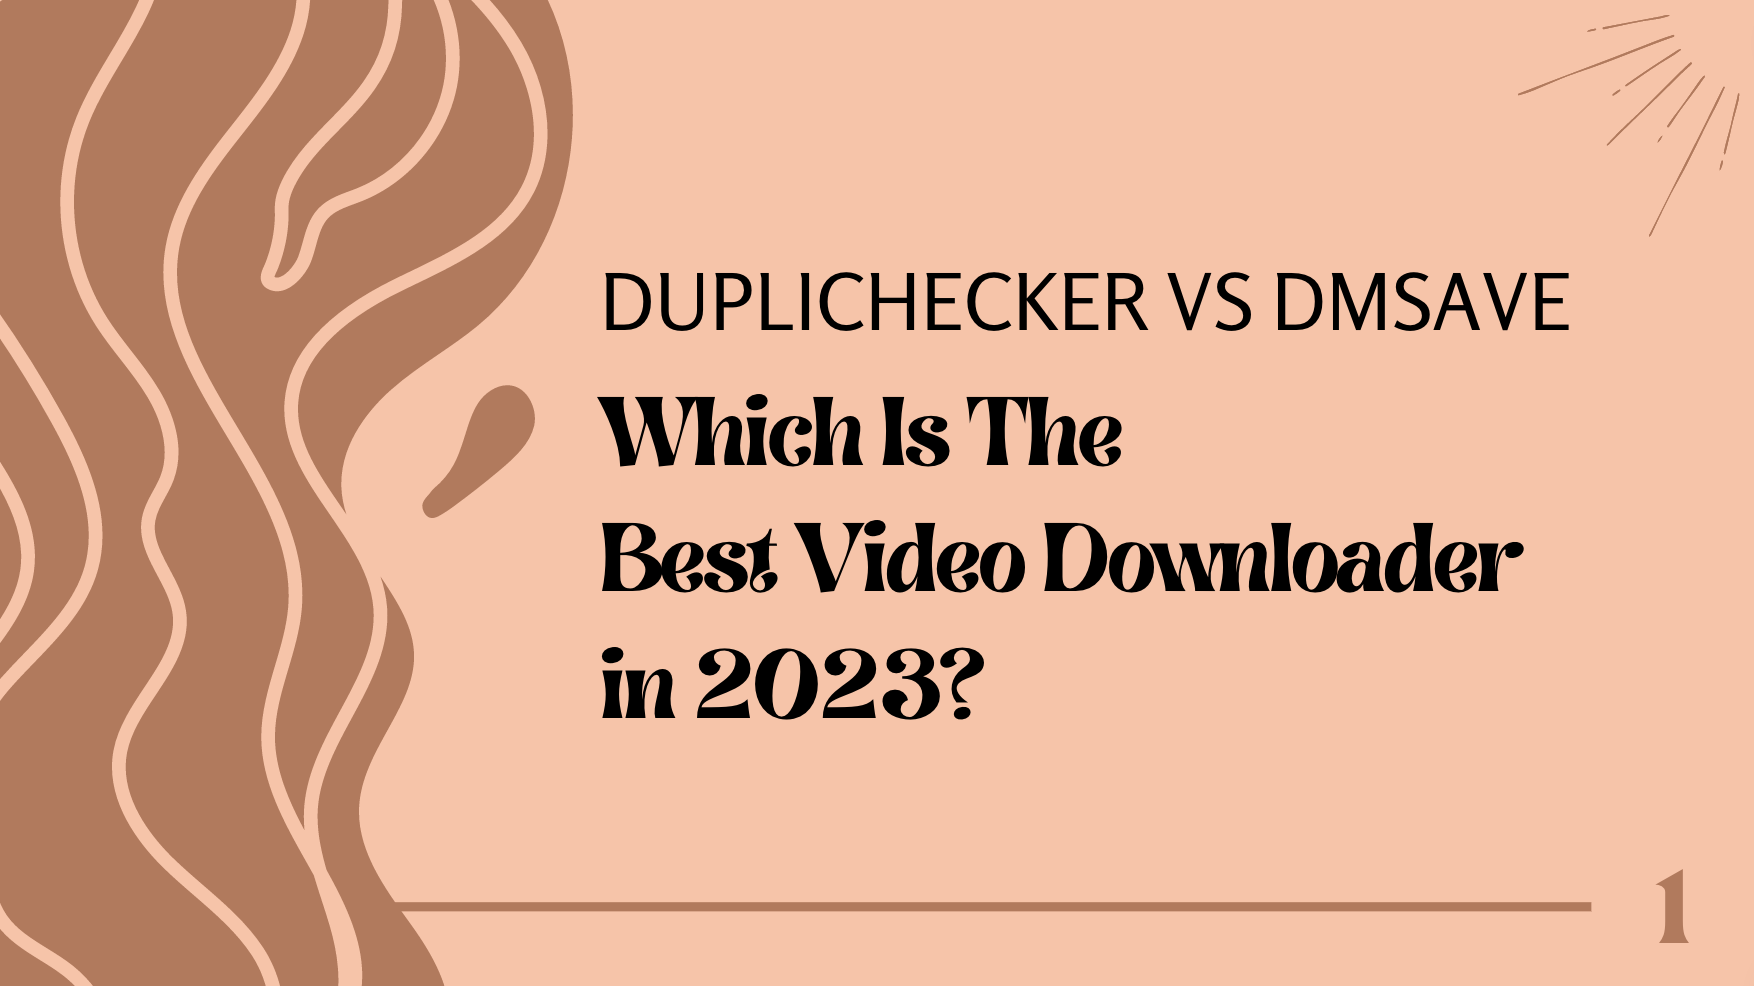 Duplichecker VS DmSave: Which Is The Best Video Downloader in 2023?